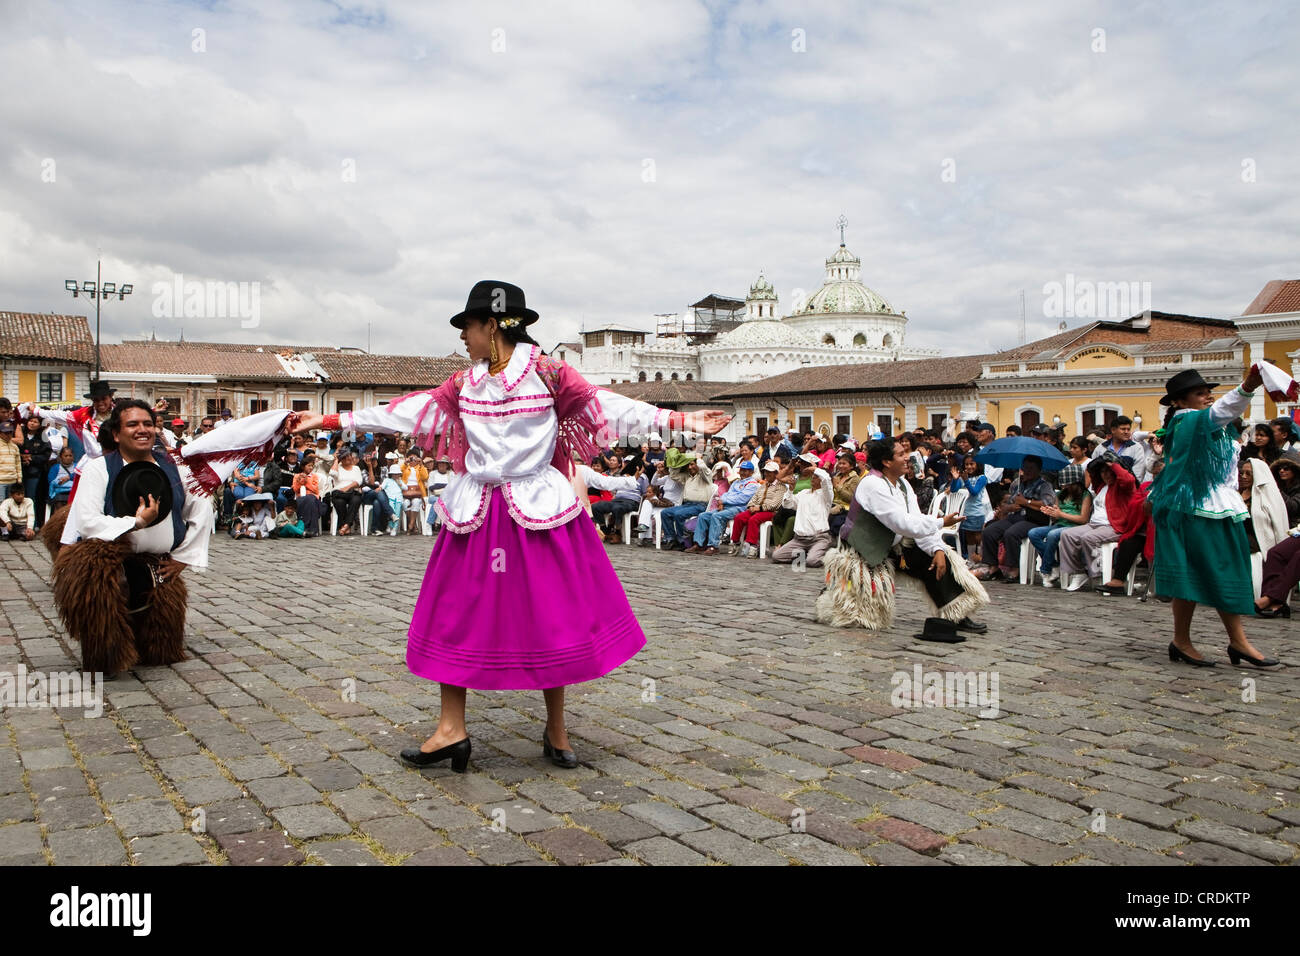 Grupos de baile de disfraces en la Plaza de San Francisco durante un domingo sin coches en el centro histórico de la ciudad de Quito, Ecuador Foto de stock